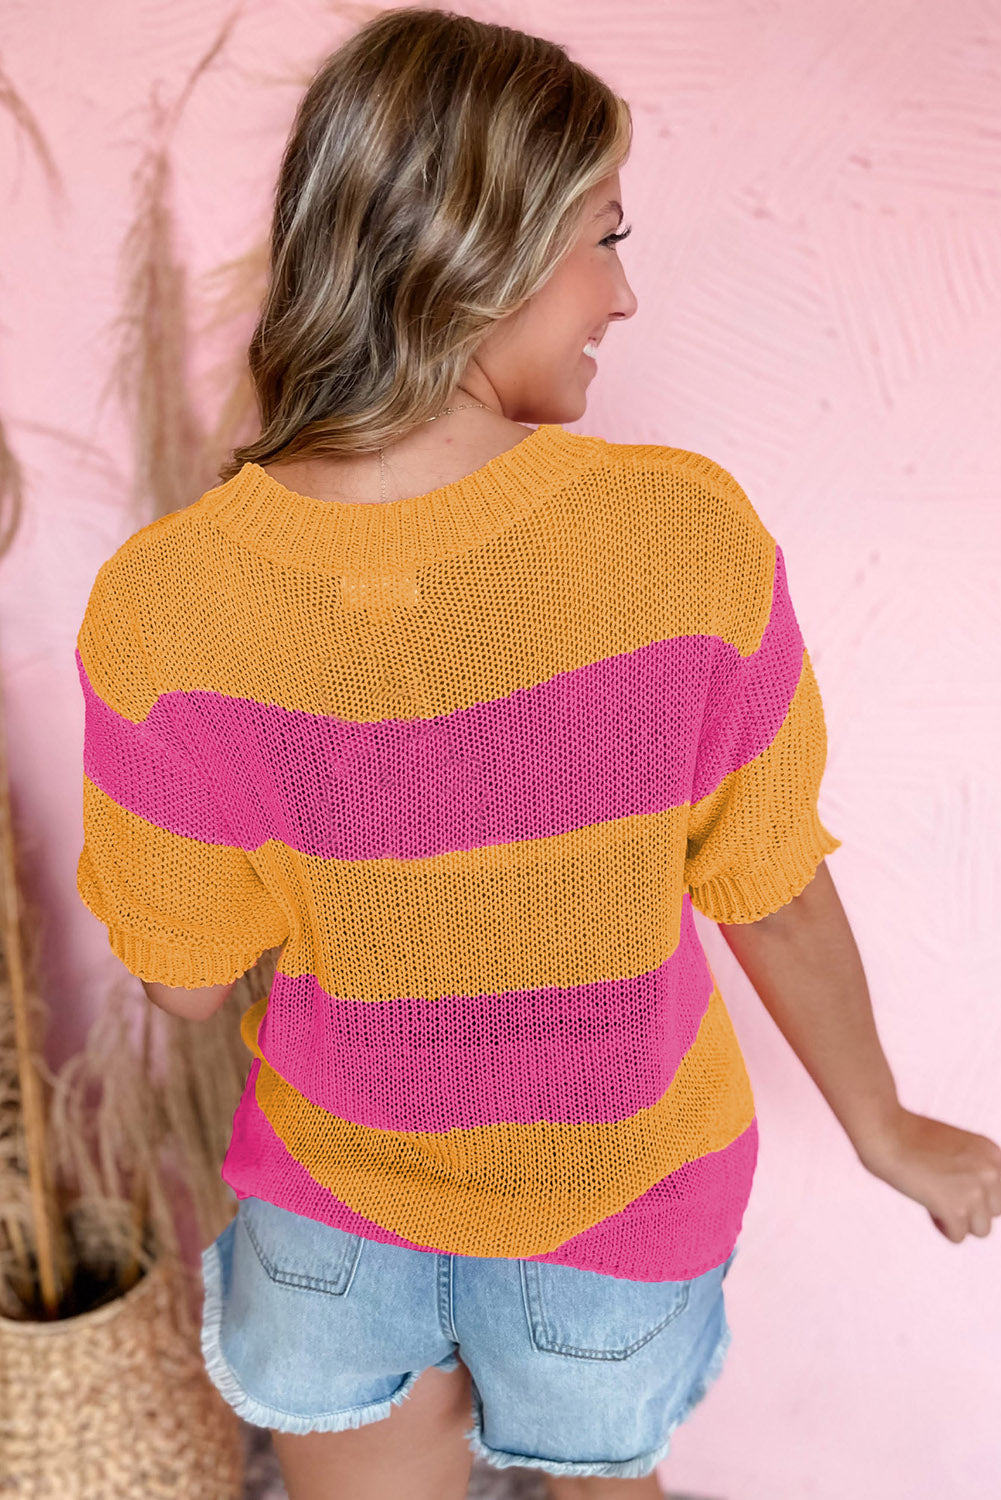 Gestrickter T-Shirt-Pullover im Farbblock-Design mit orangefarbenen Streifen